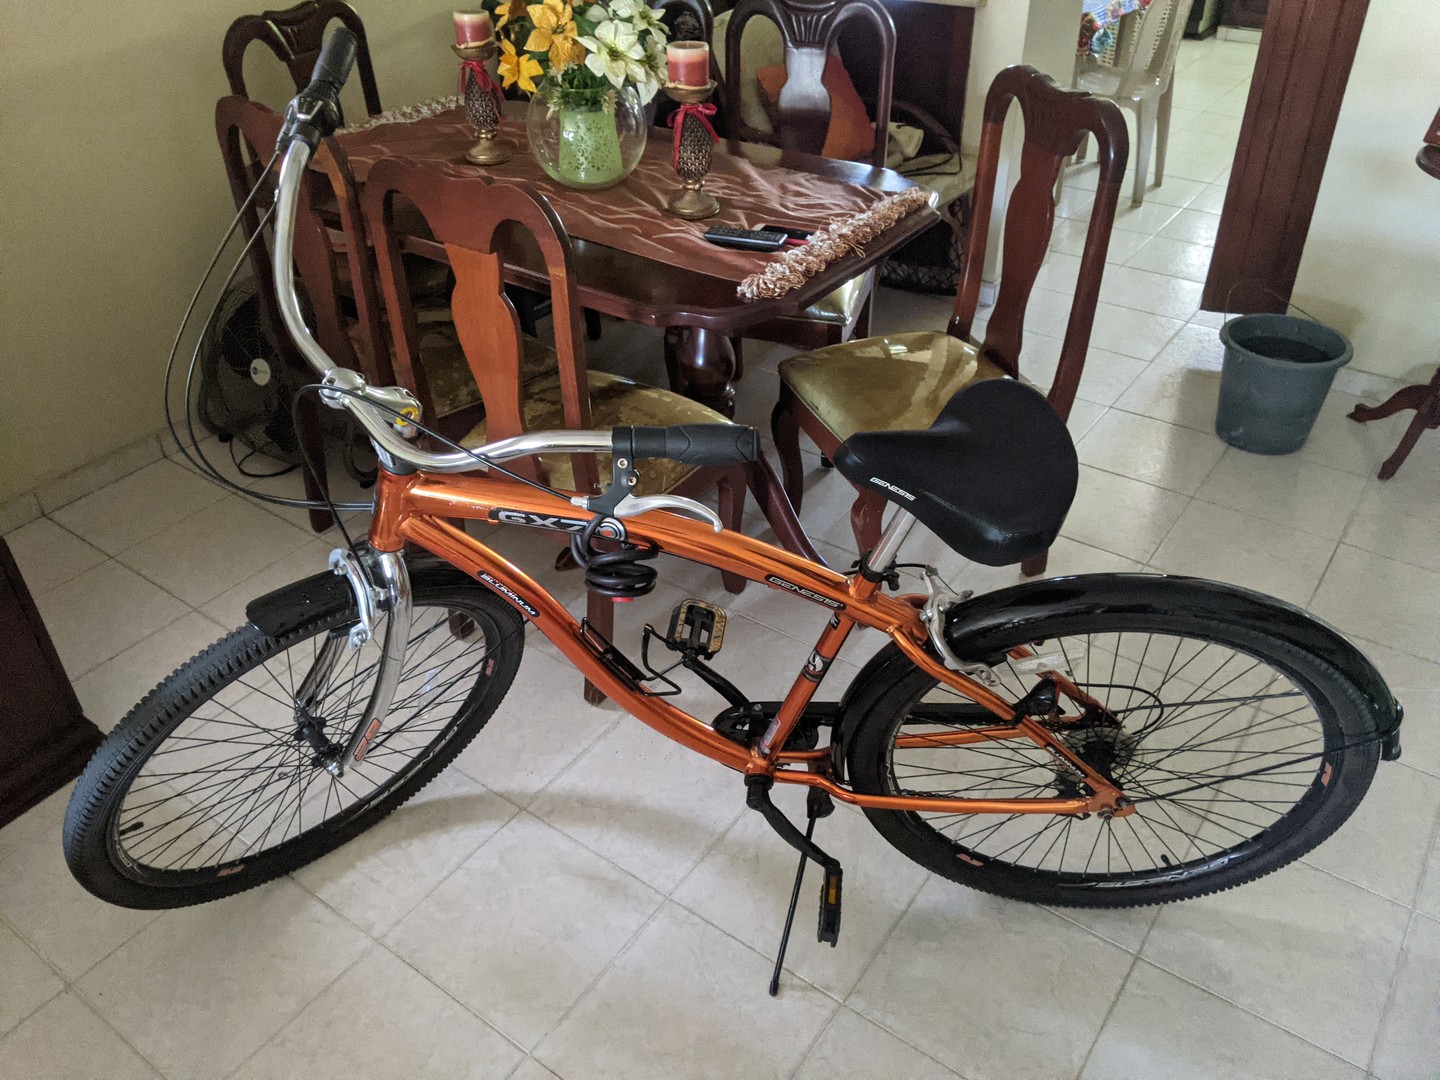 bicicletas y accesorios - Bicicleta aro 29 como nueva